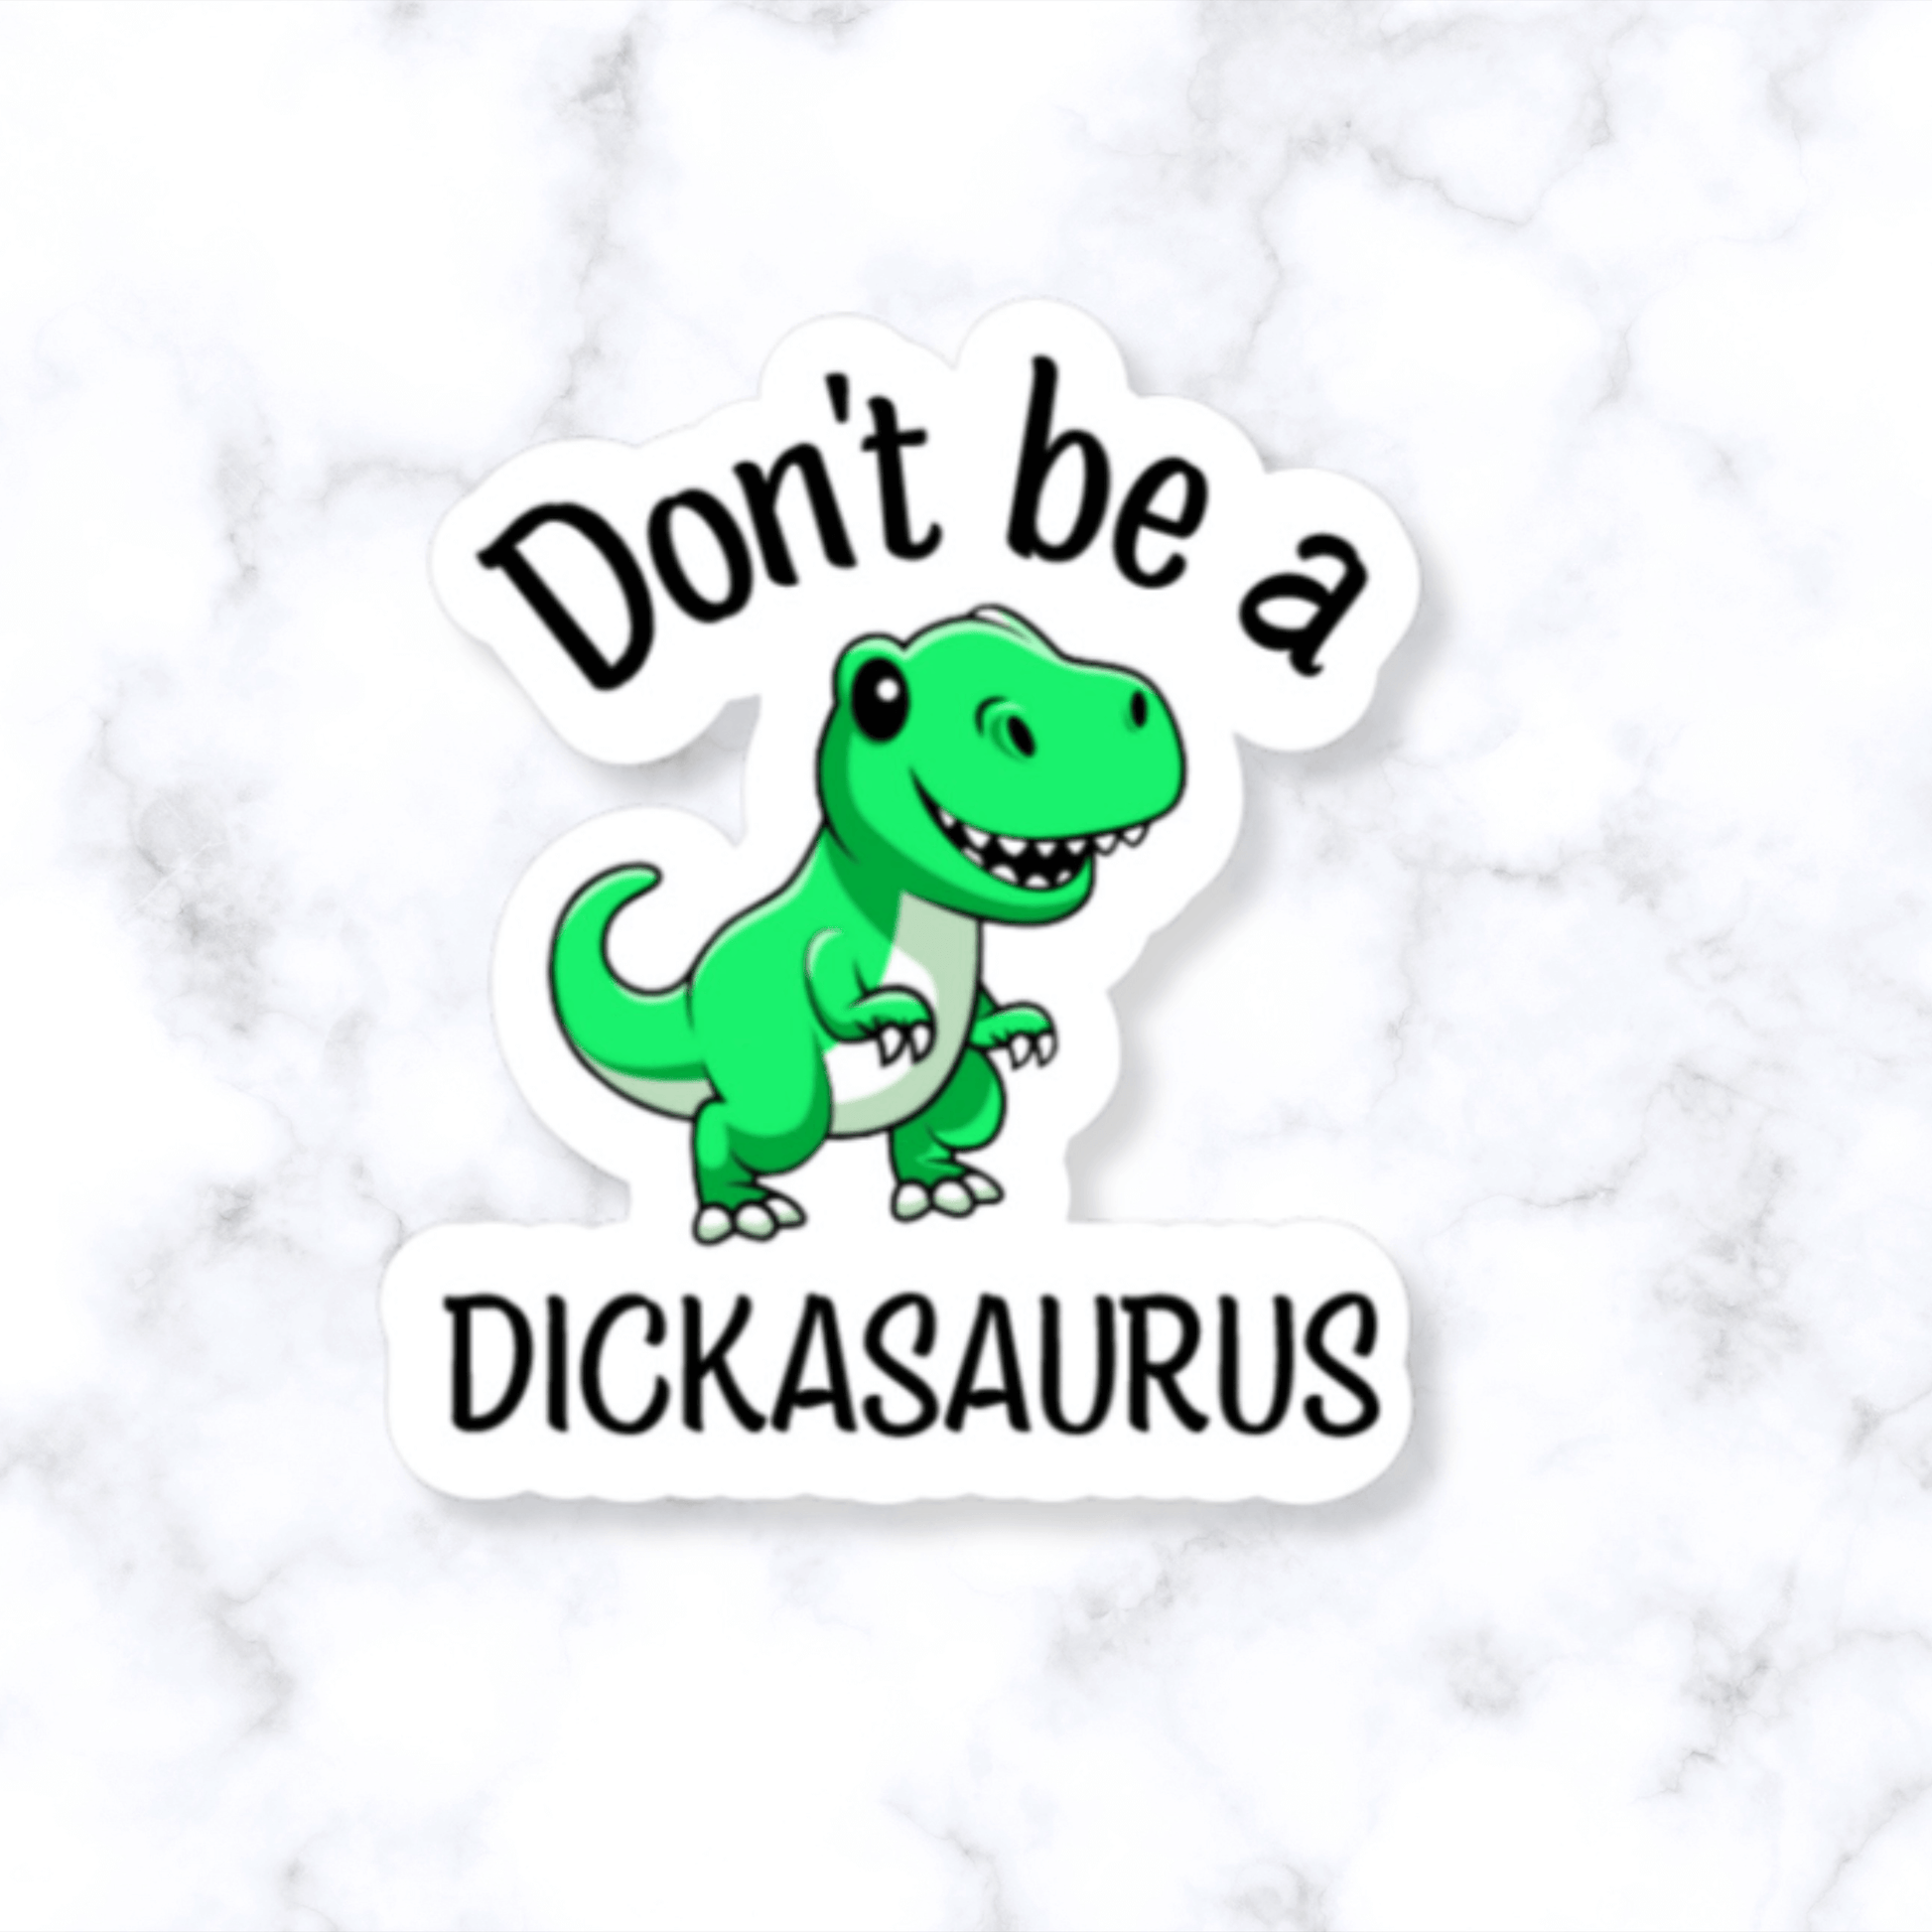 Don't Be a Dickasaurus sticker